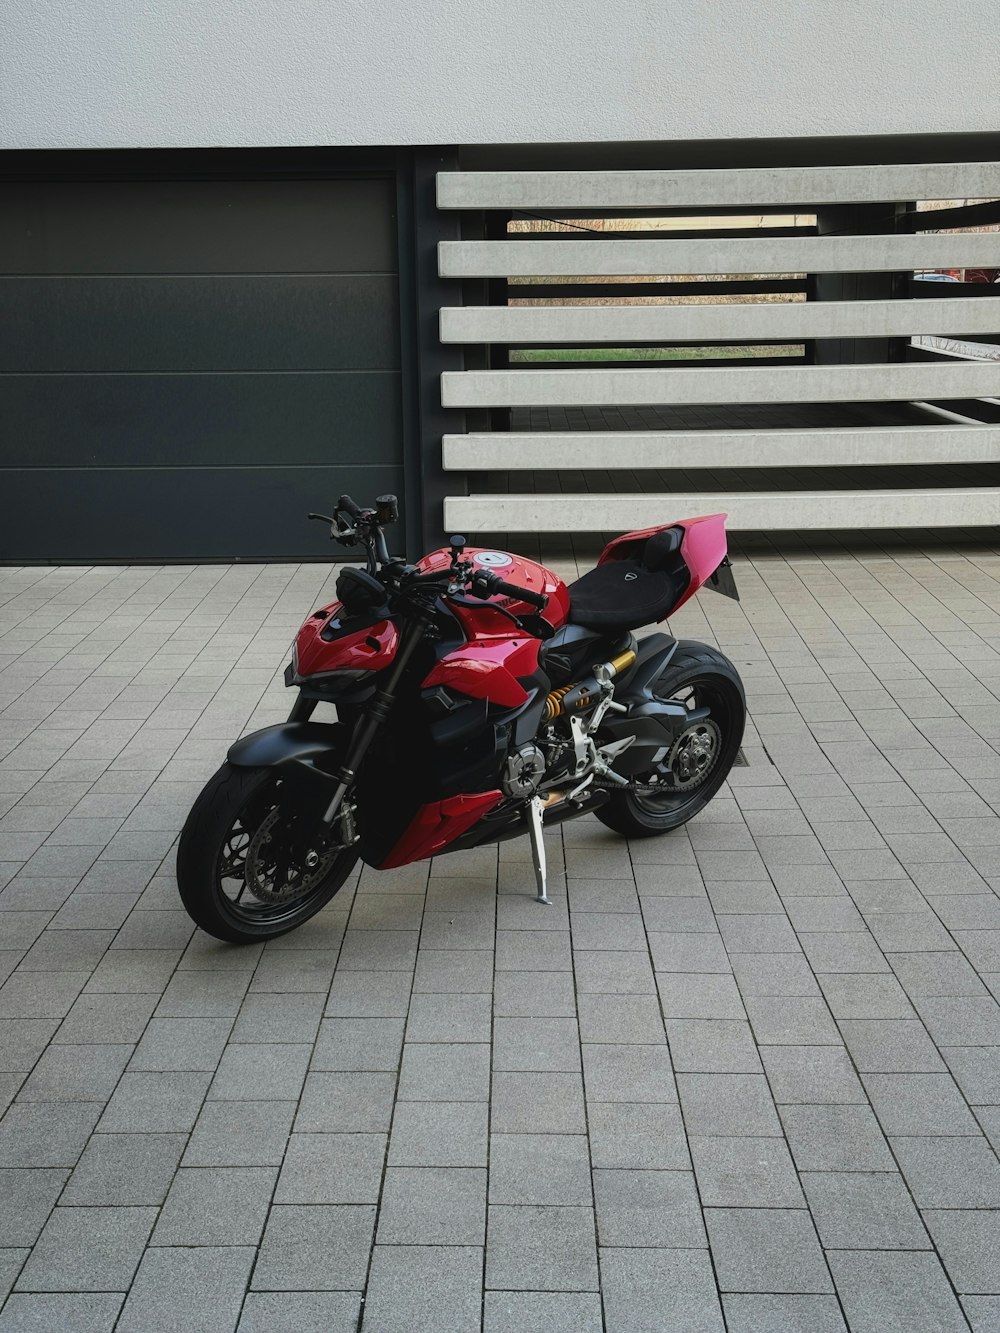 Una motocicleta roja y negra estacionada frente a un edificio